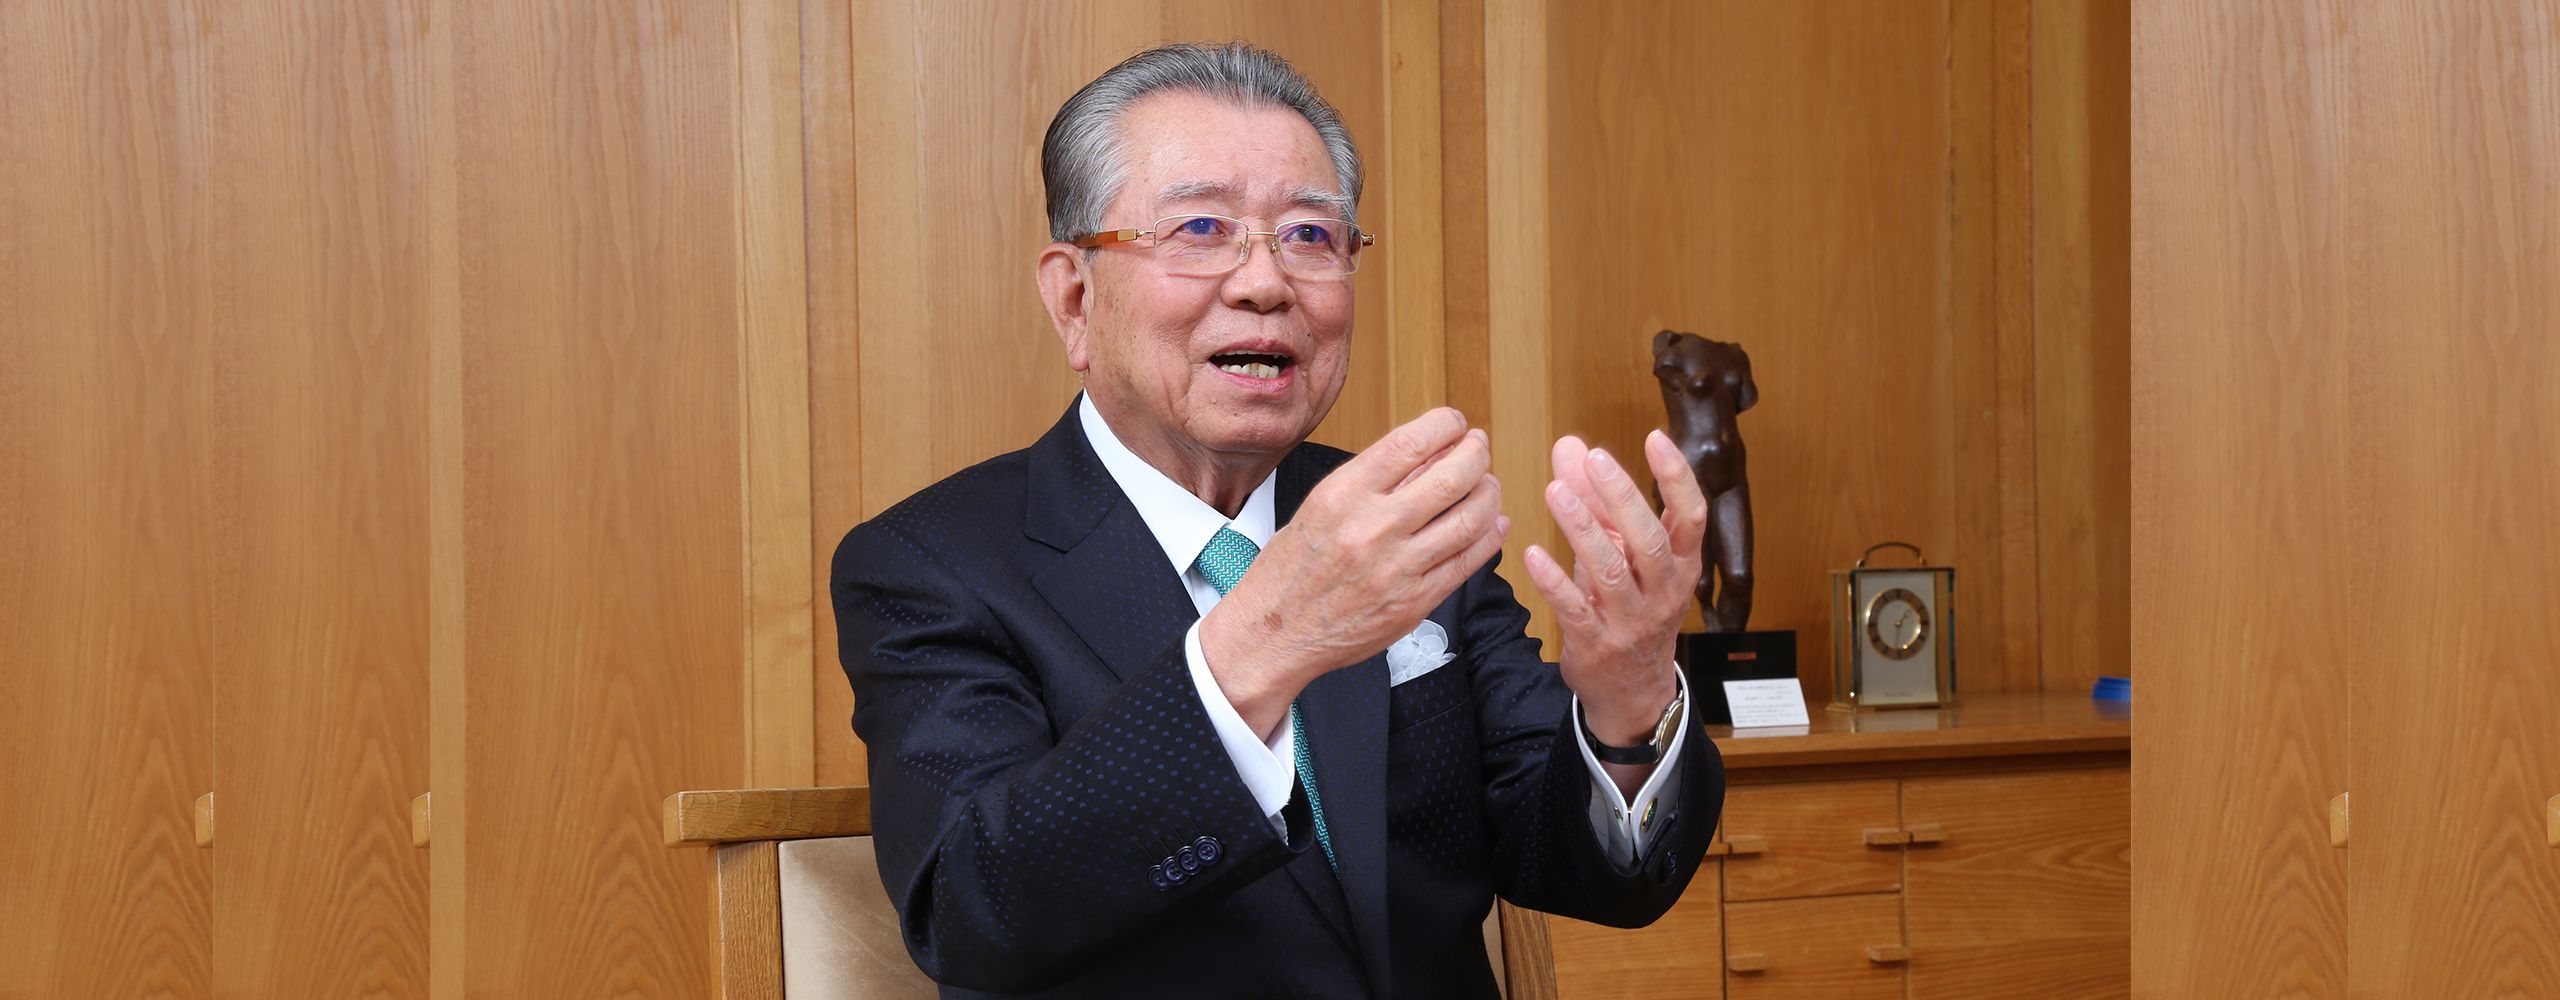 The Founder, Masahiro Shima